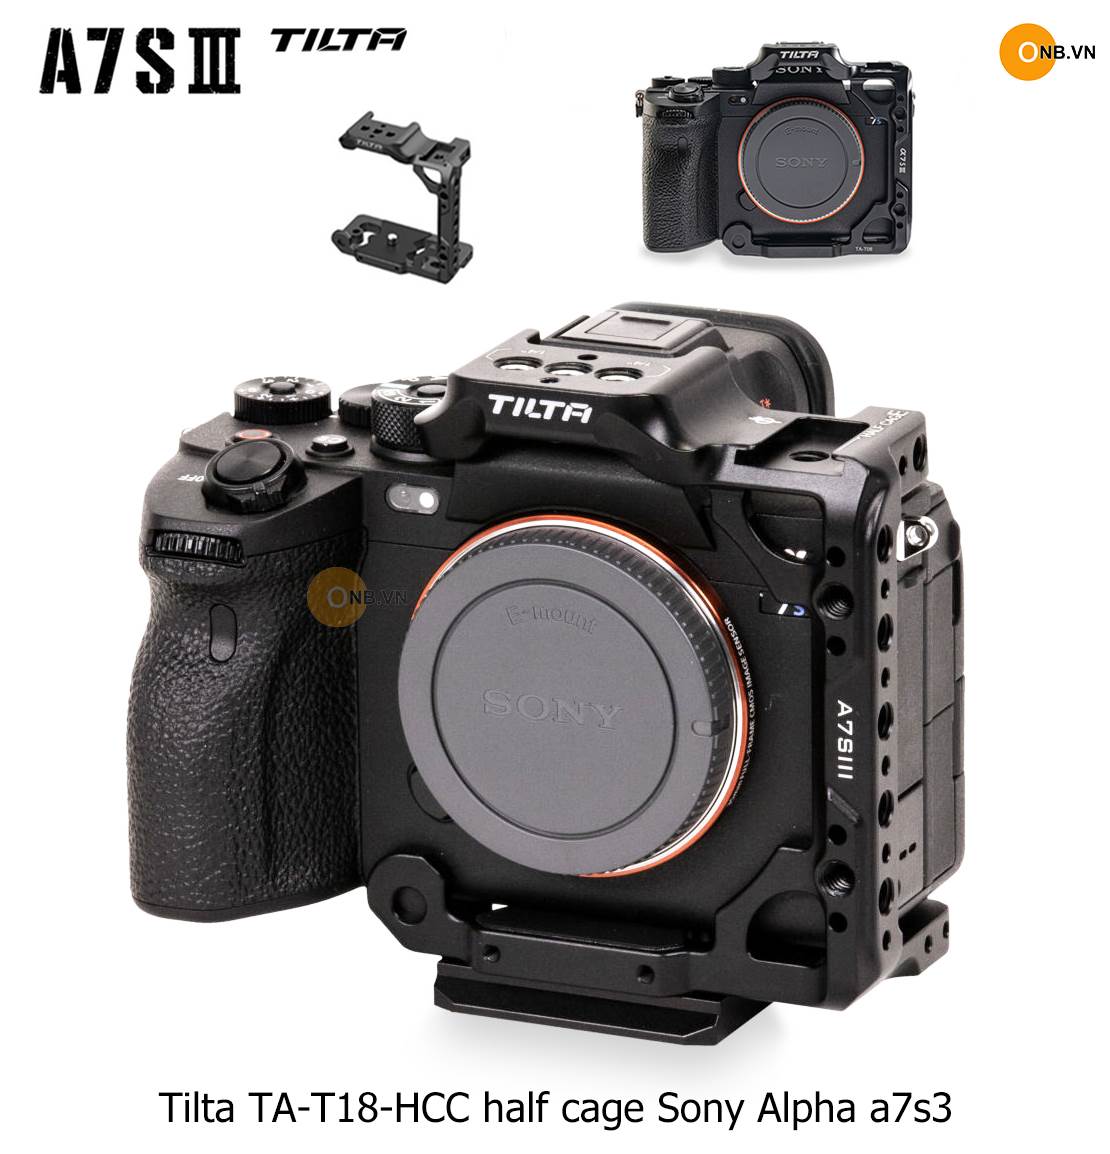 Tilta TA-T18-HCC Half Cage Sony Alpha a7s3